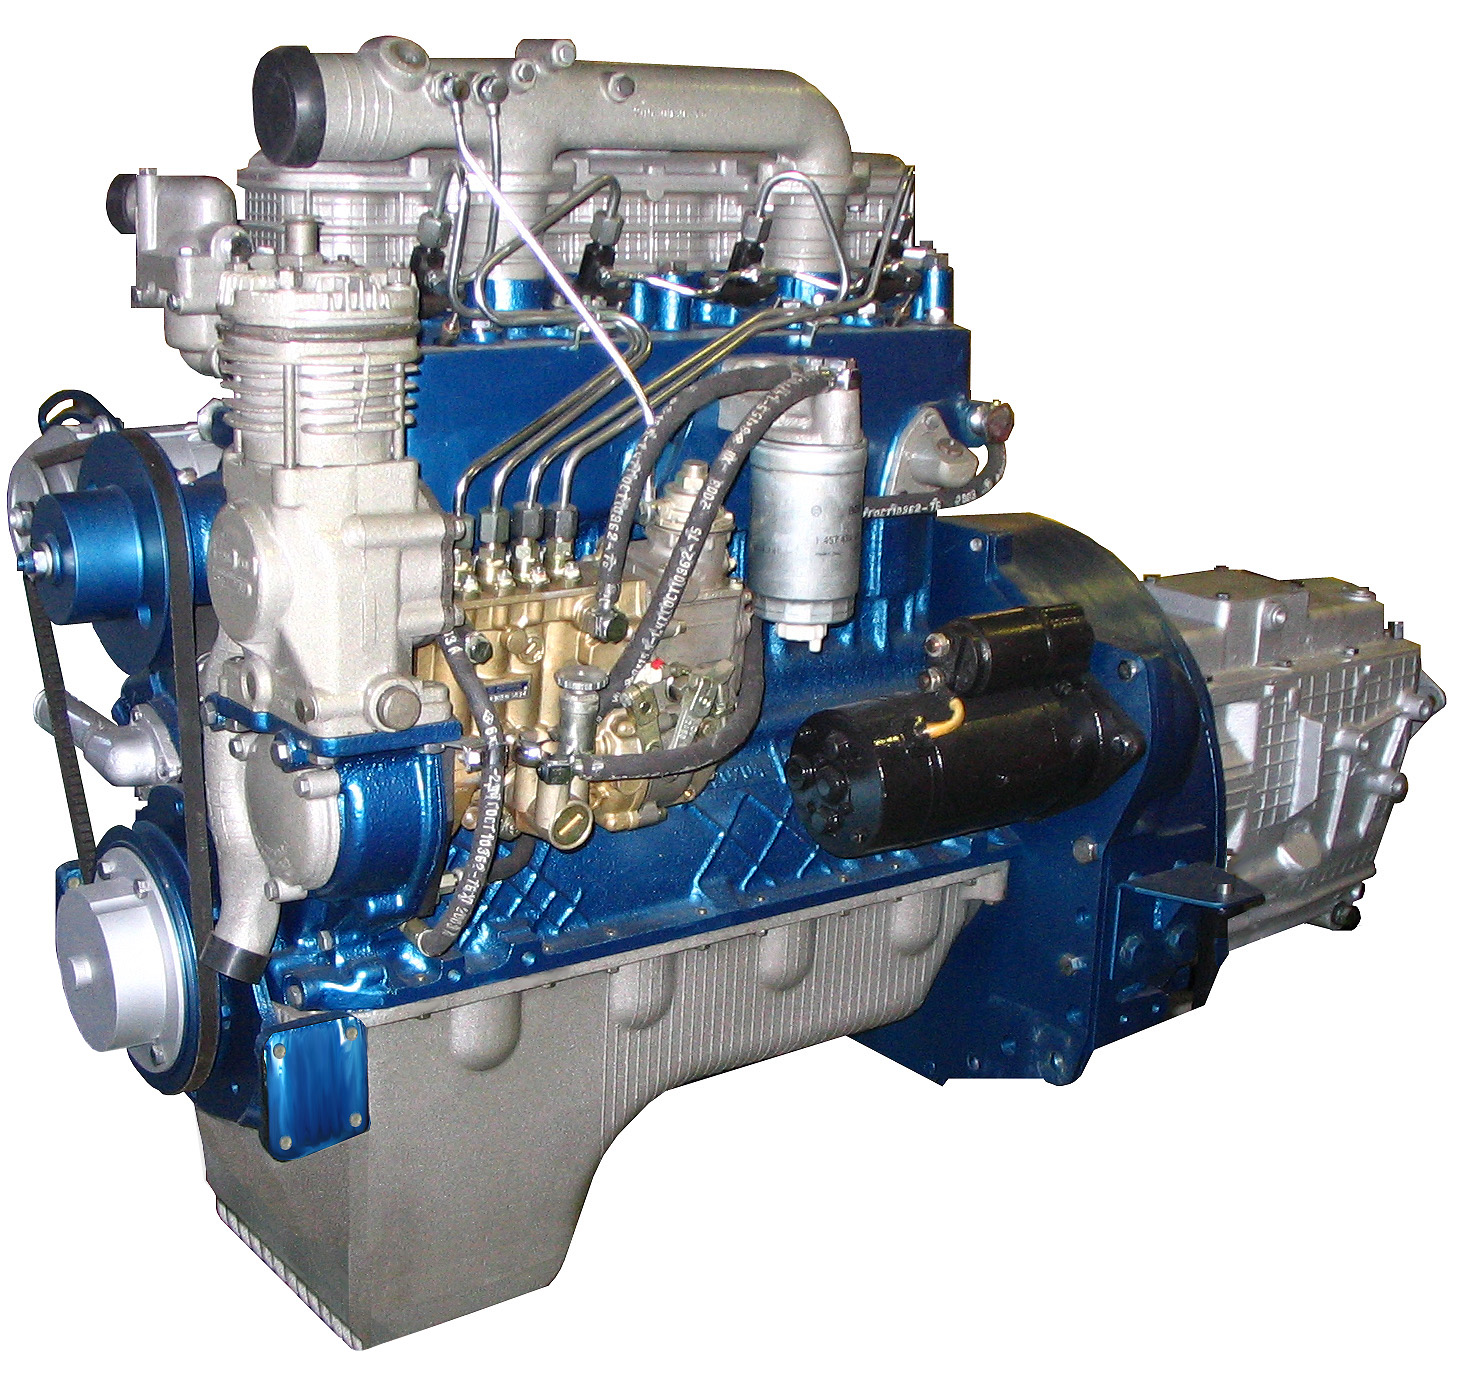 Двигателя устанавливаемые на мтз. Двигатель ММЗ Д-245. Двигатель ММЗ 245 евро 2. Двигатель ММЗ Д-245.7. Двигатель ММЗ Д245.7е2.